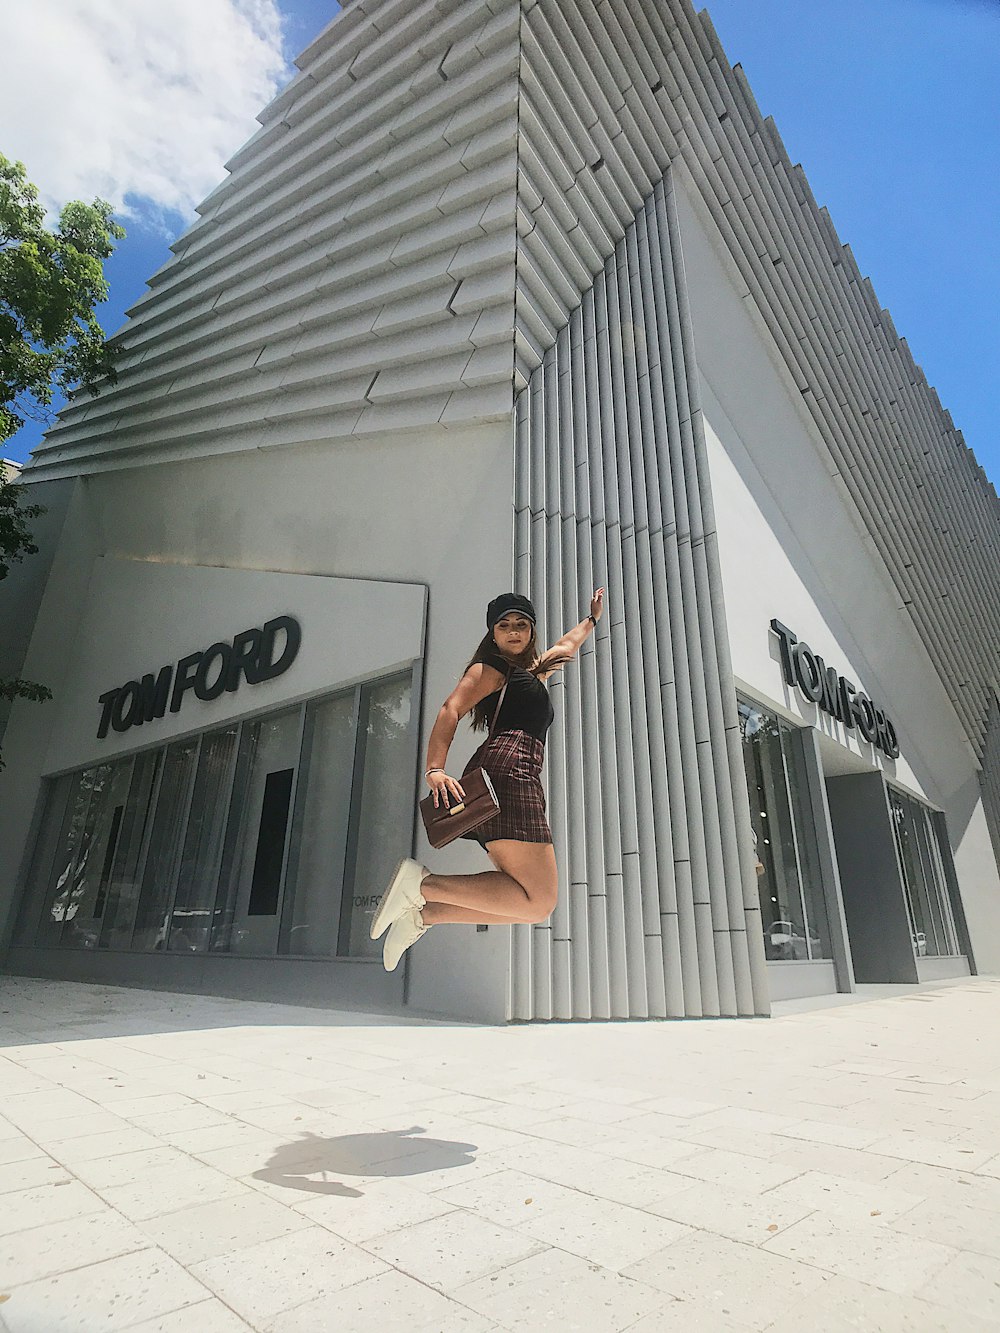 Mujer saltando cerca del edificio Tom Ford durante el día